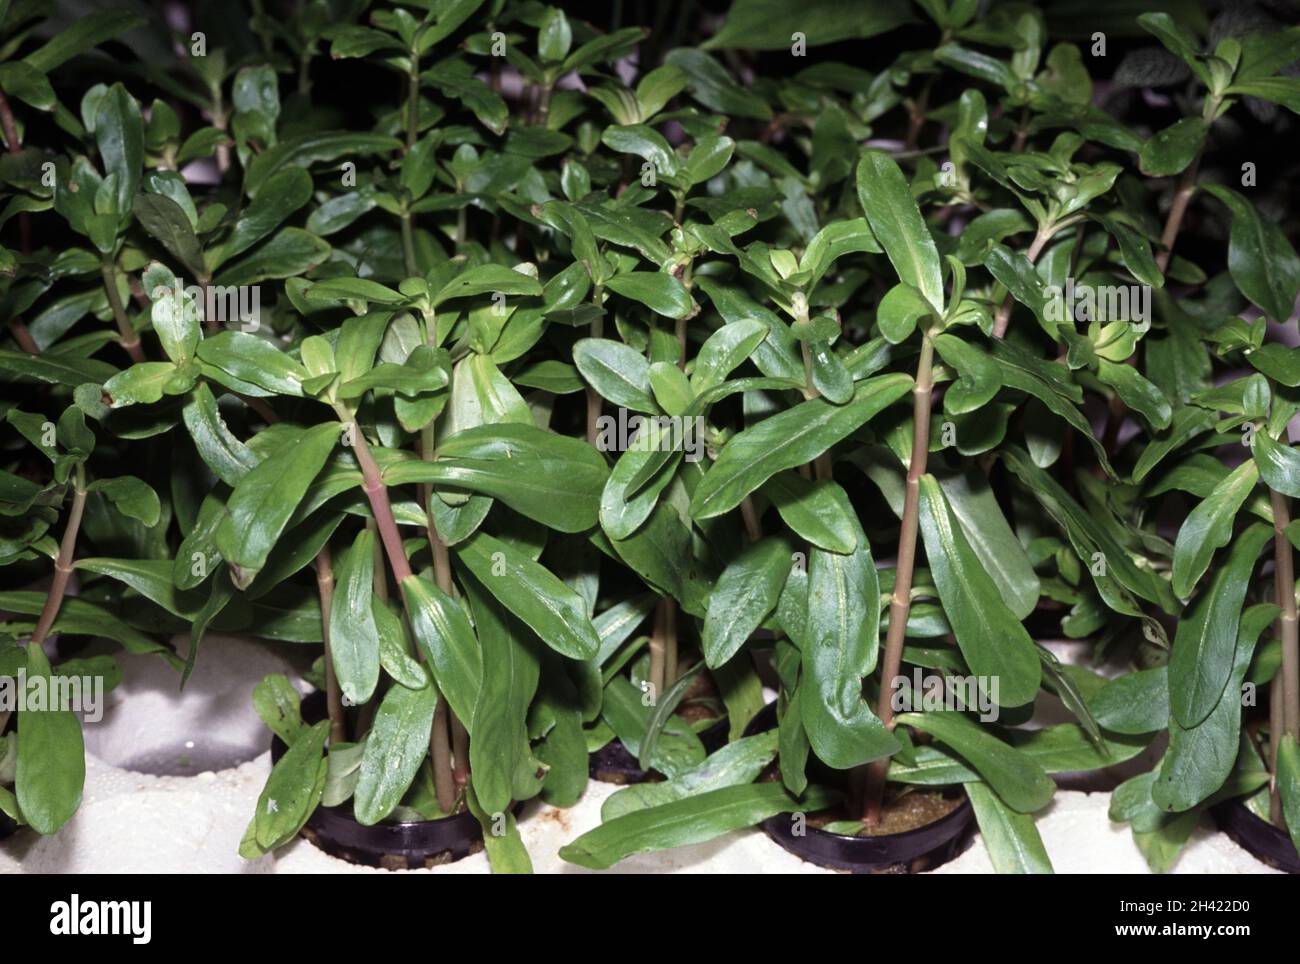 Ammannia crassicaulis from Africa is also known as Nesaea crassicaulis. Hydroponic culture for aquarium purpose Stock Photo